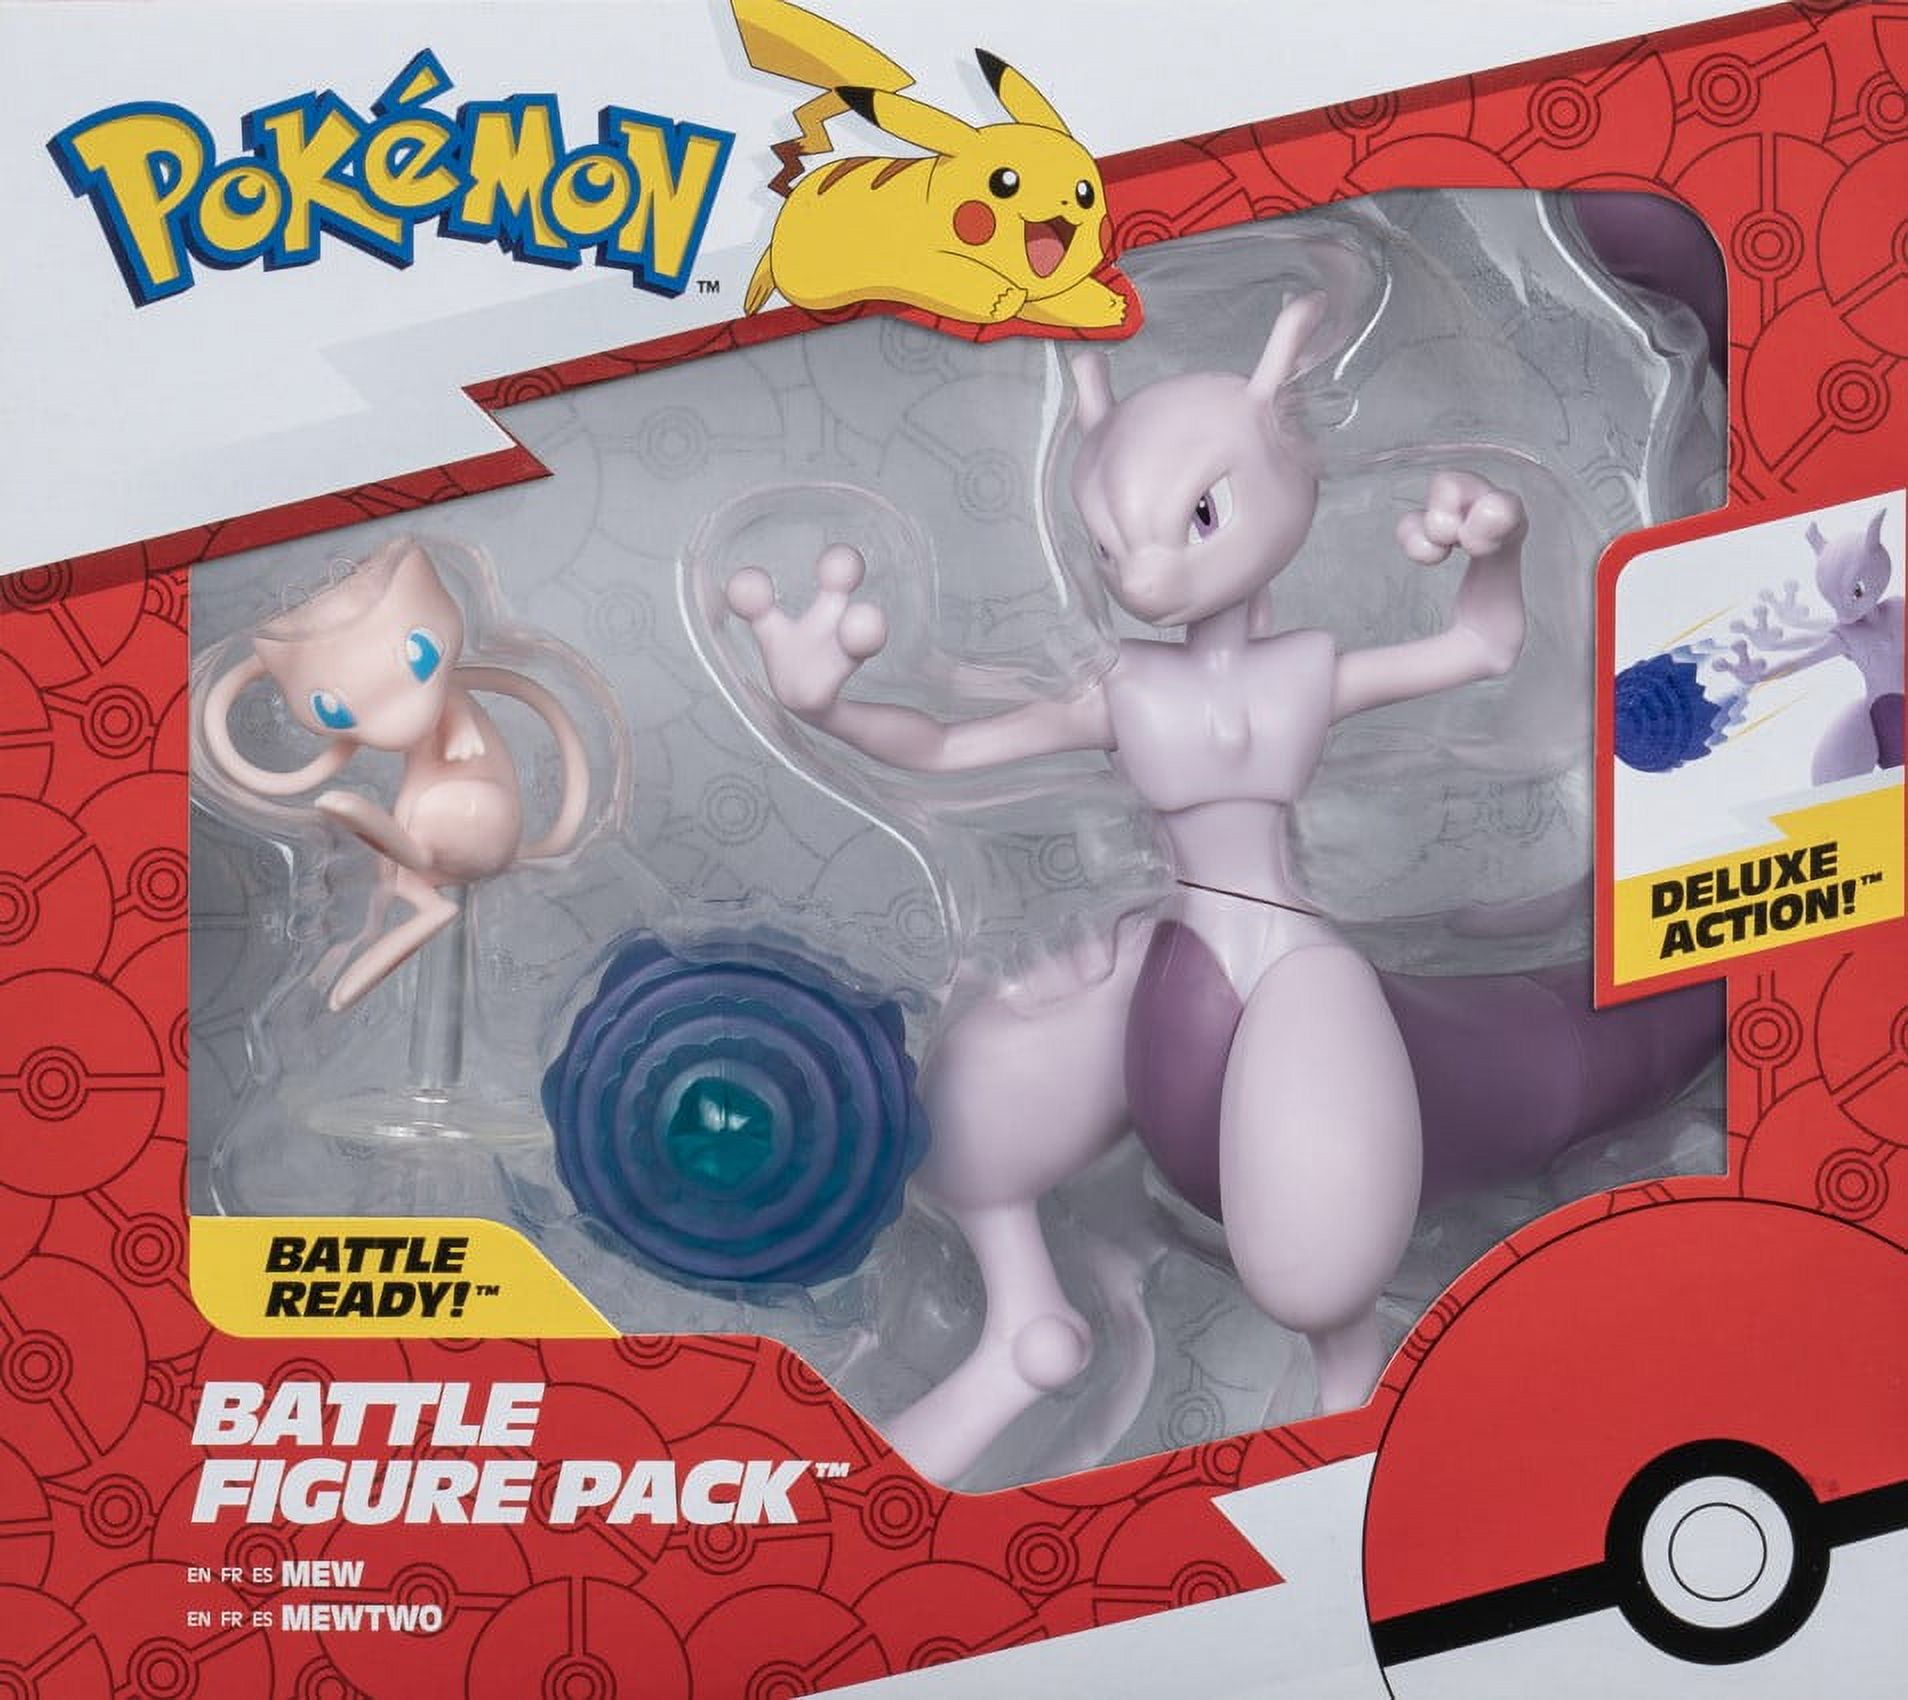 Pokemon TCG Mega Mewtwo X Figure Collection Box 